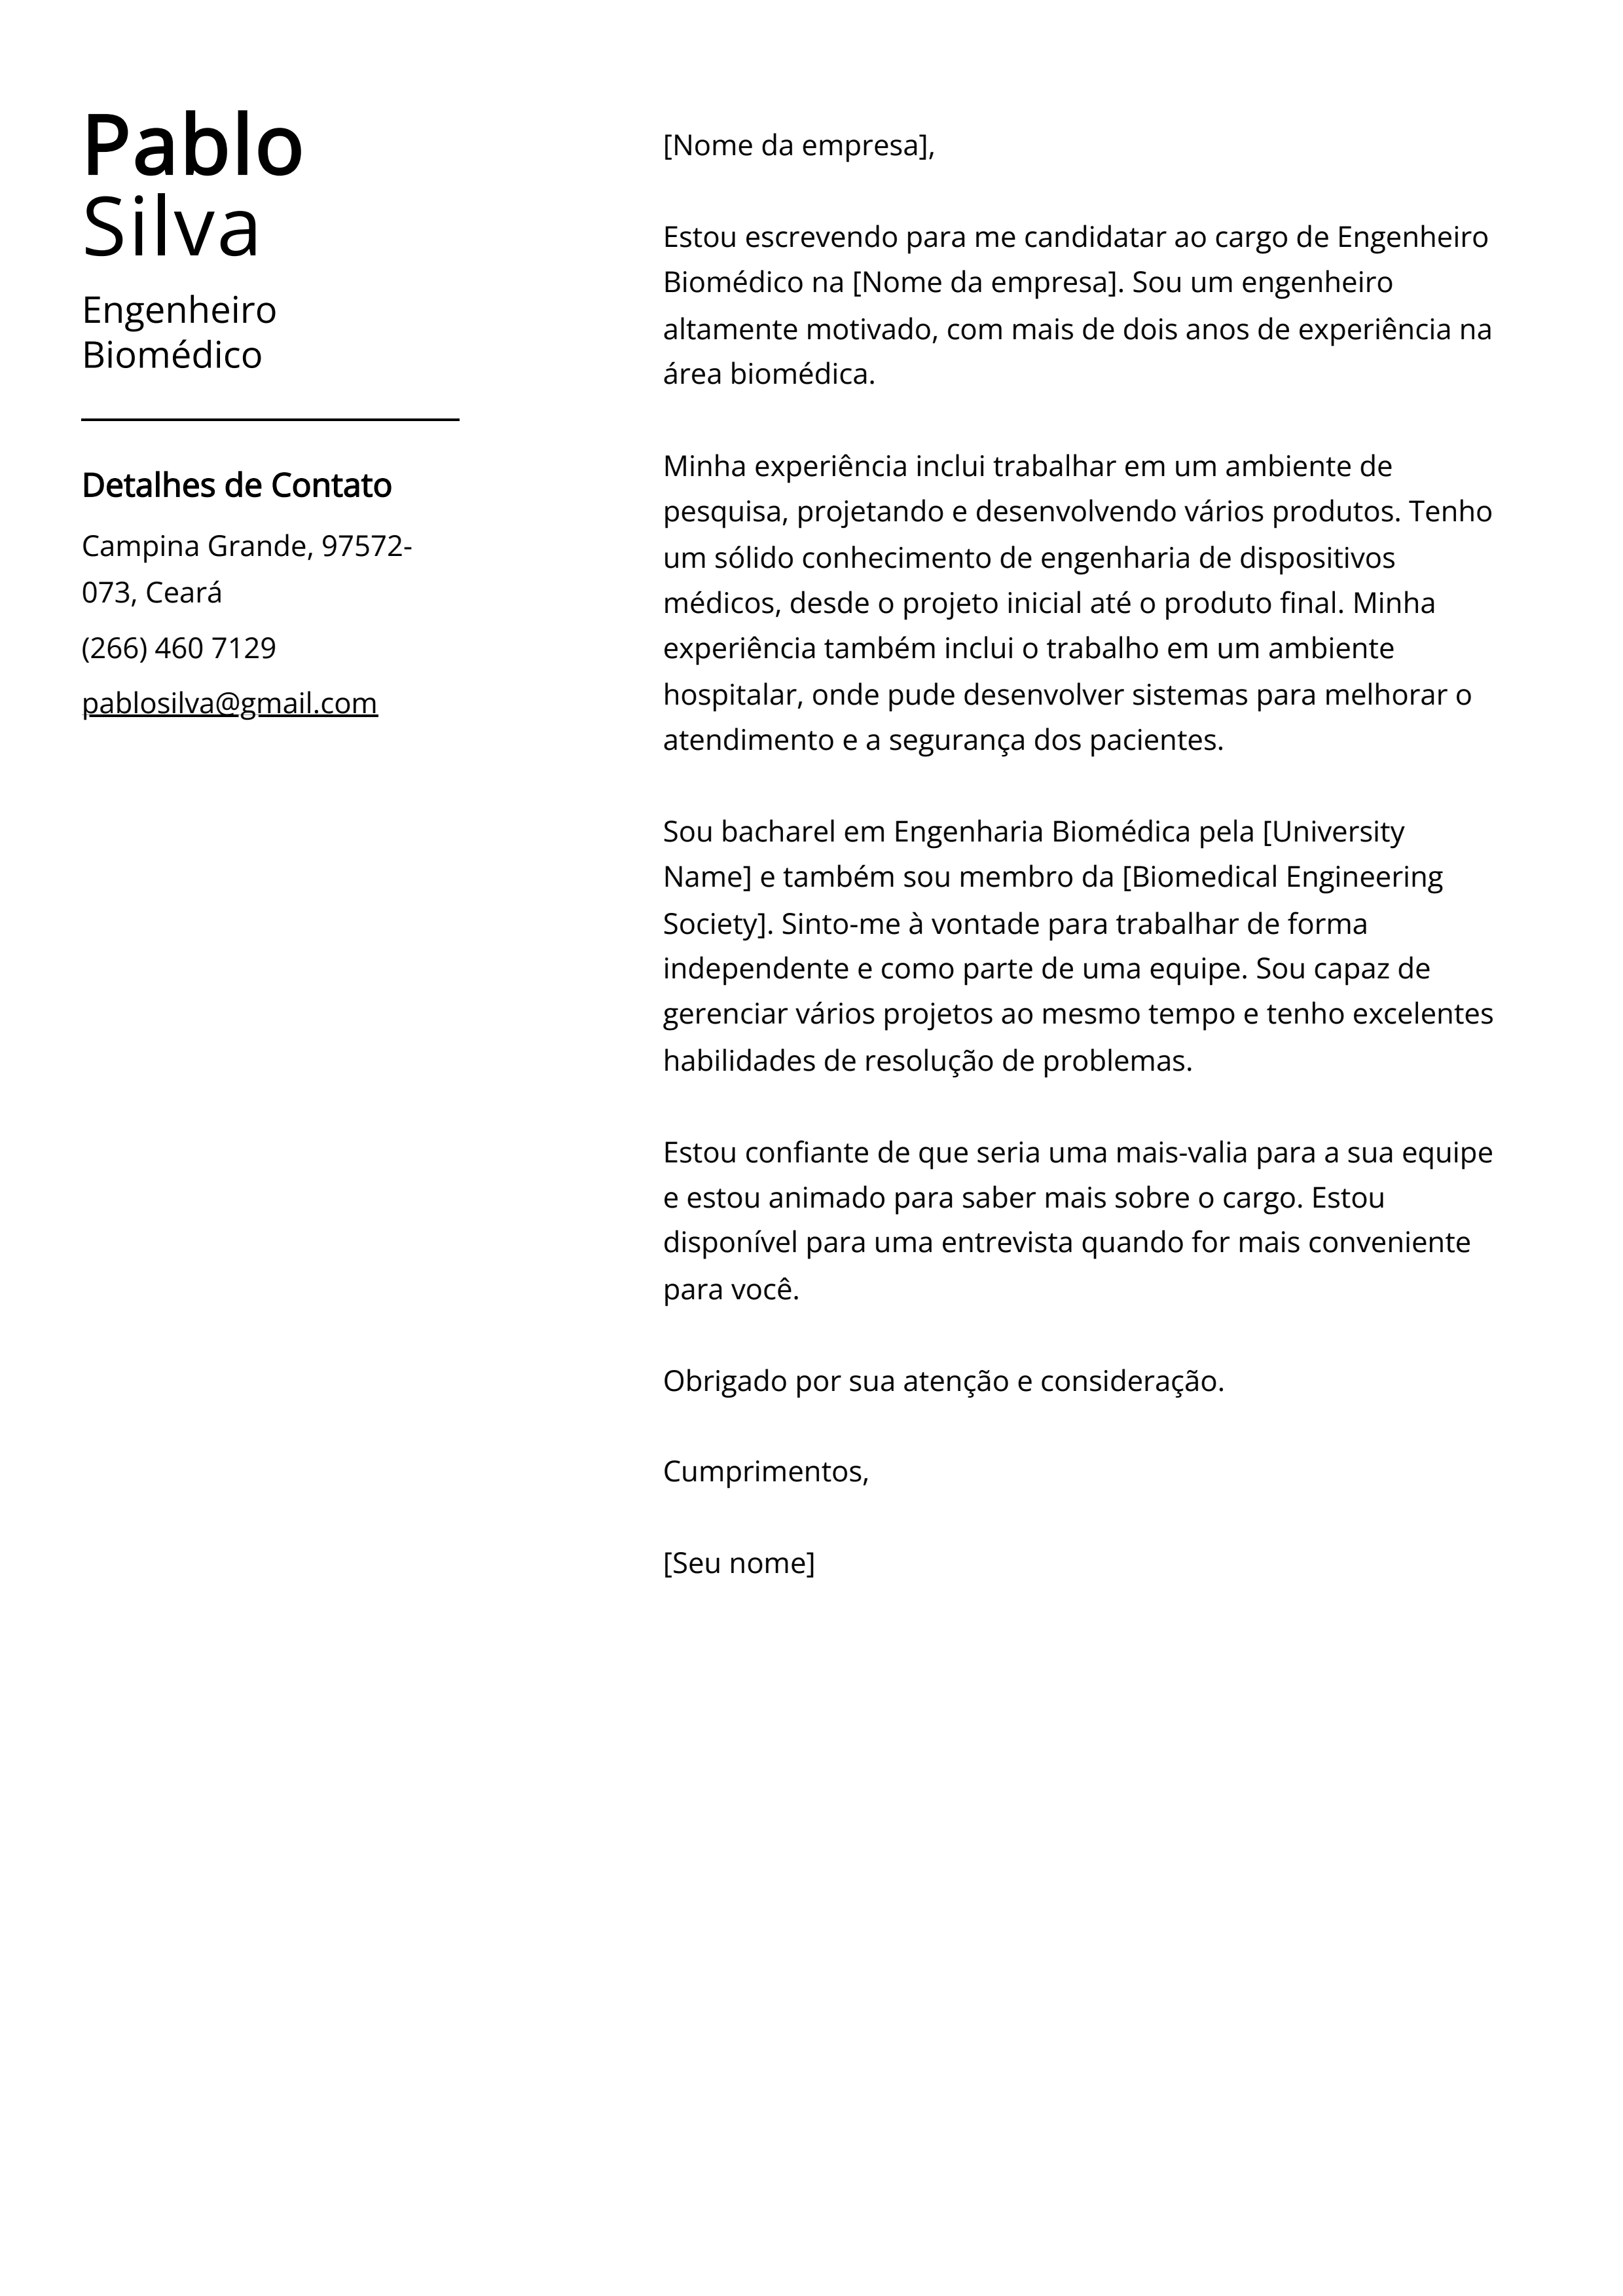 Exemplo de carta de apresentação do Engenheiro Biomédico